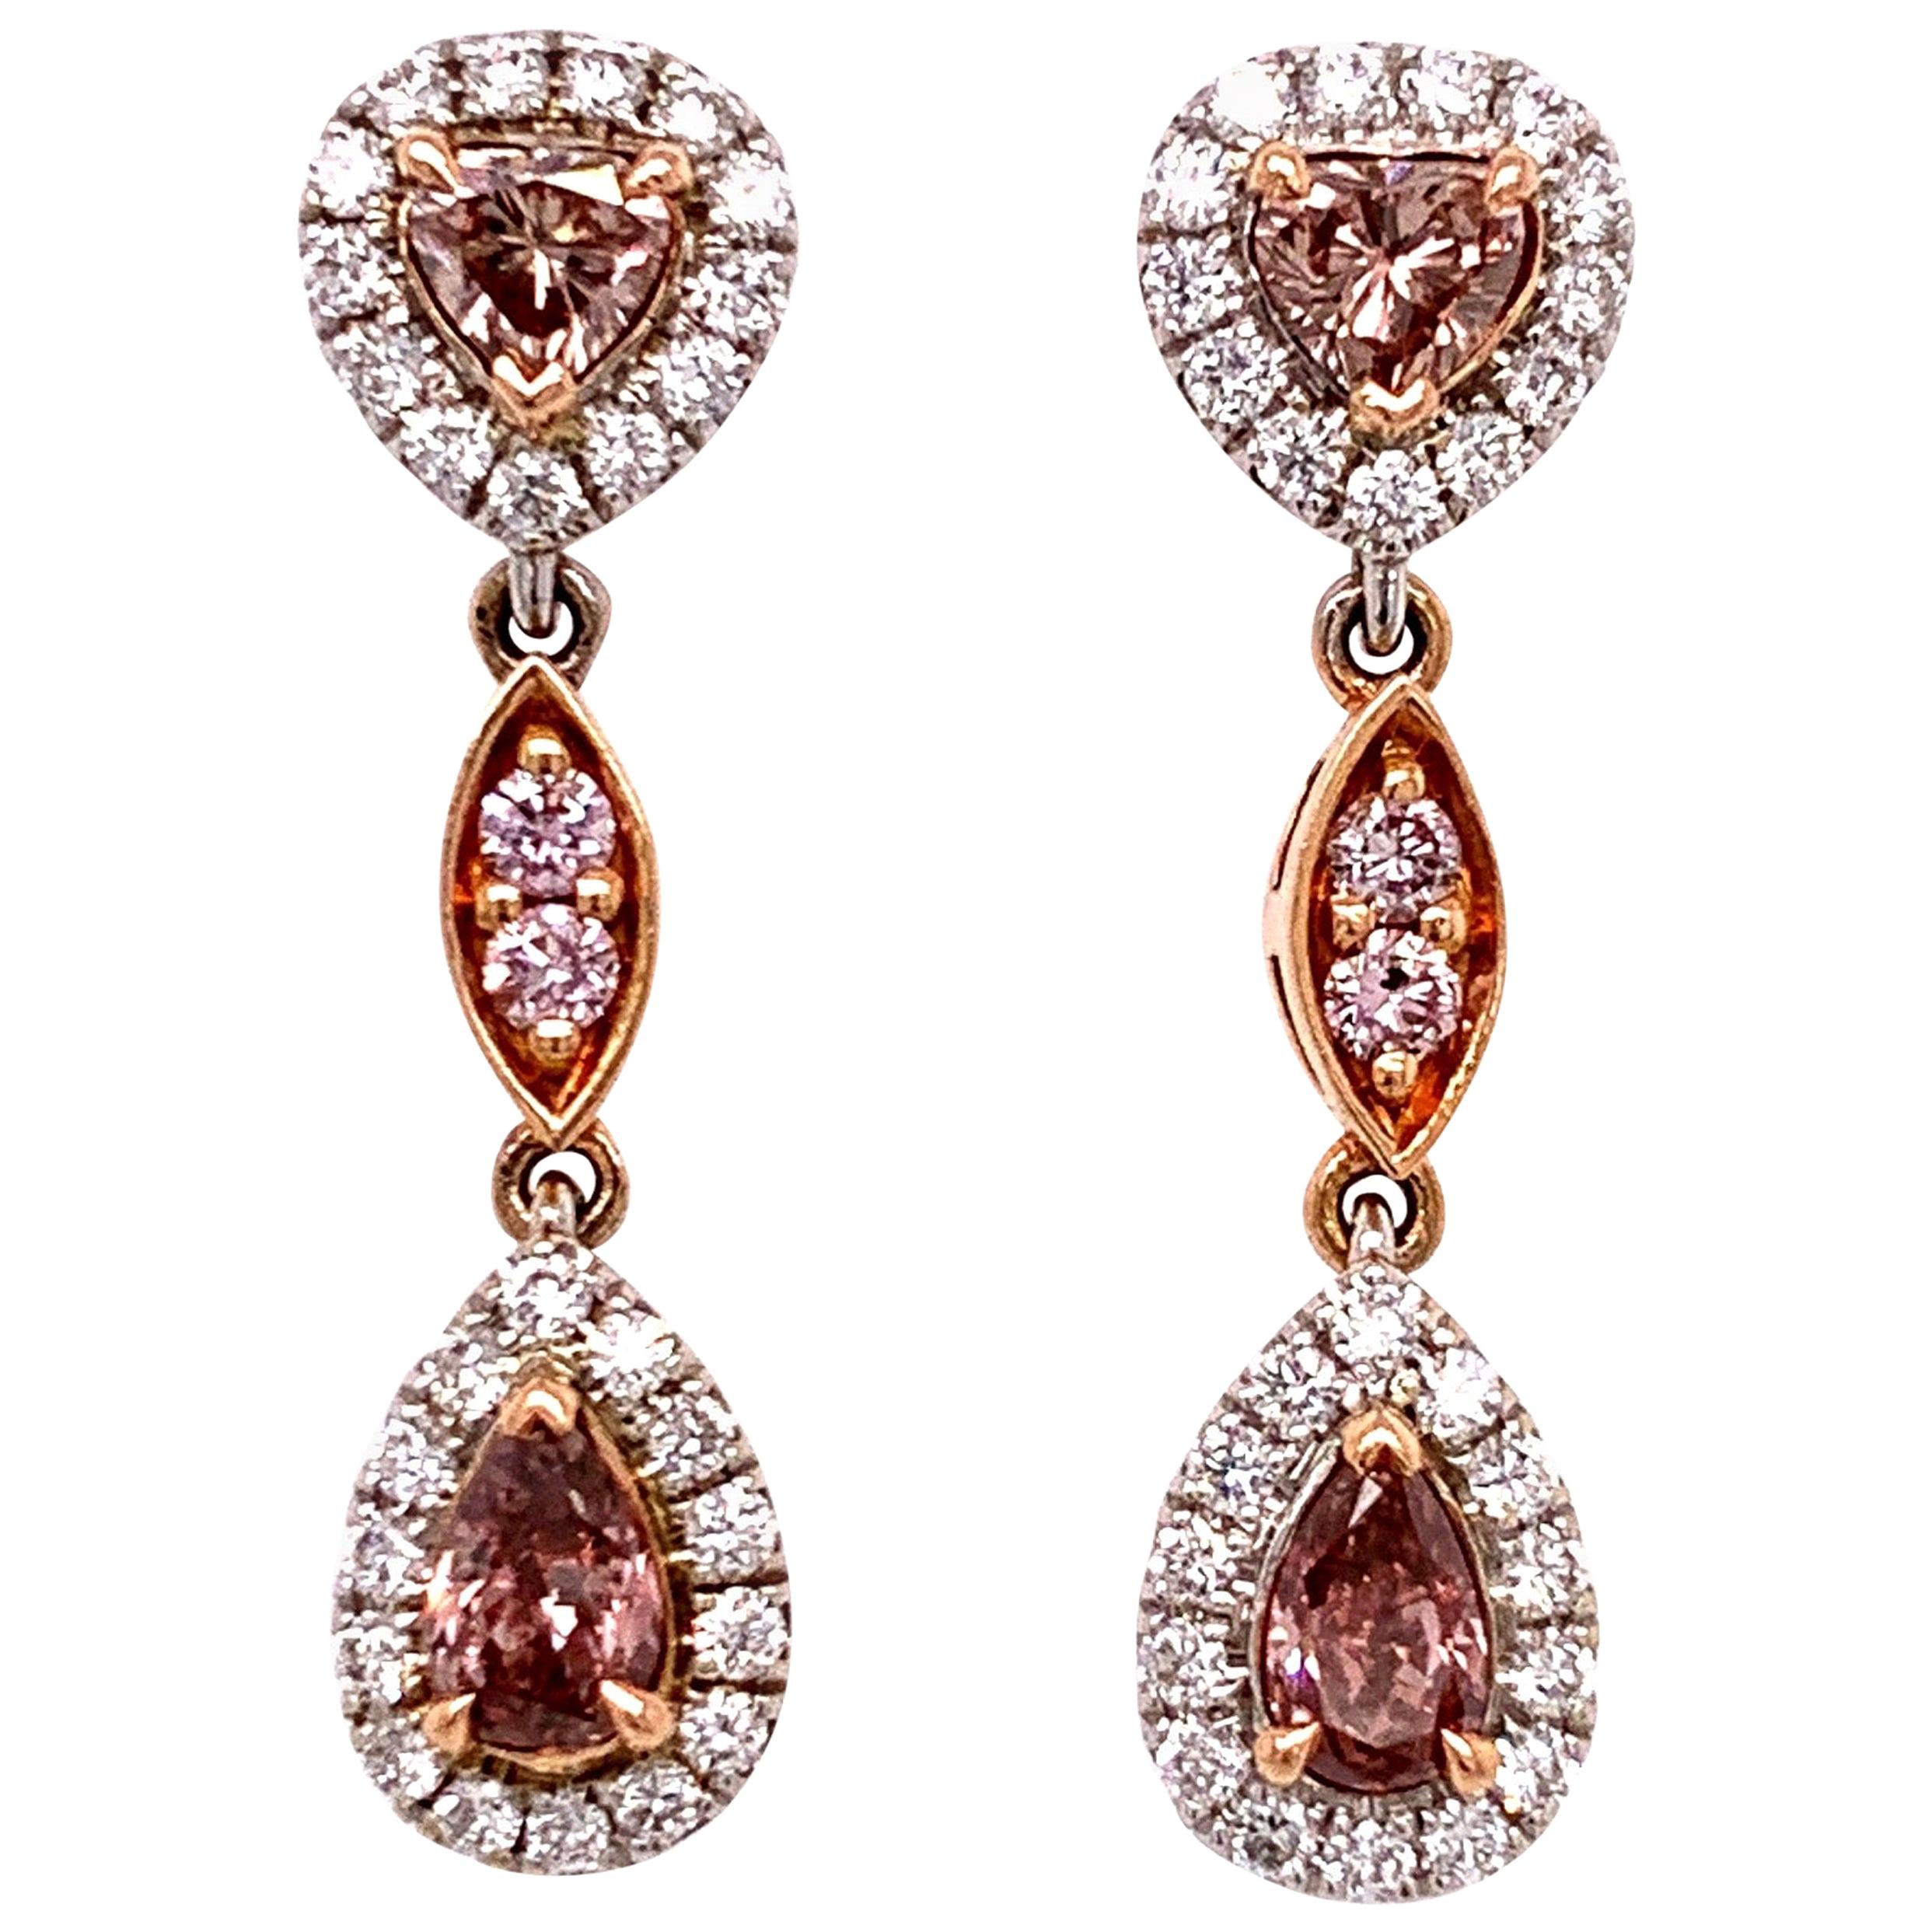 Gia Fancy Orangy Pink Diamond Earrings For Sale